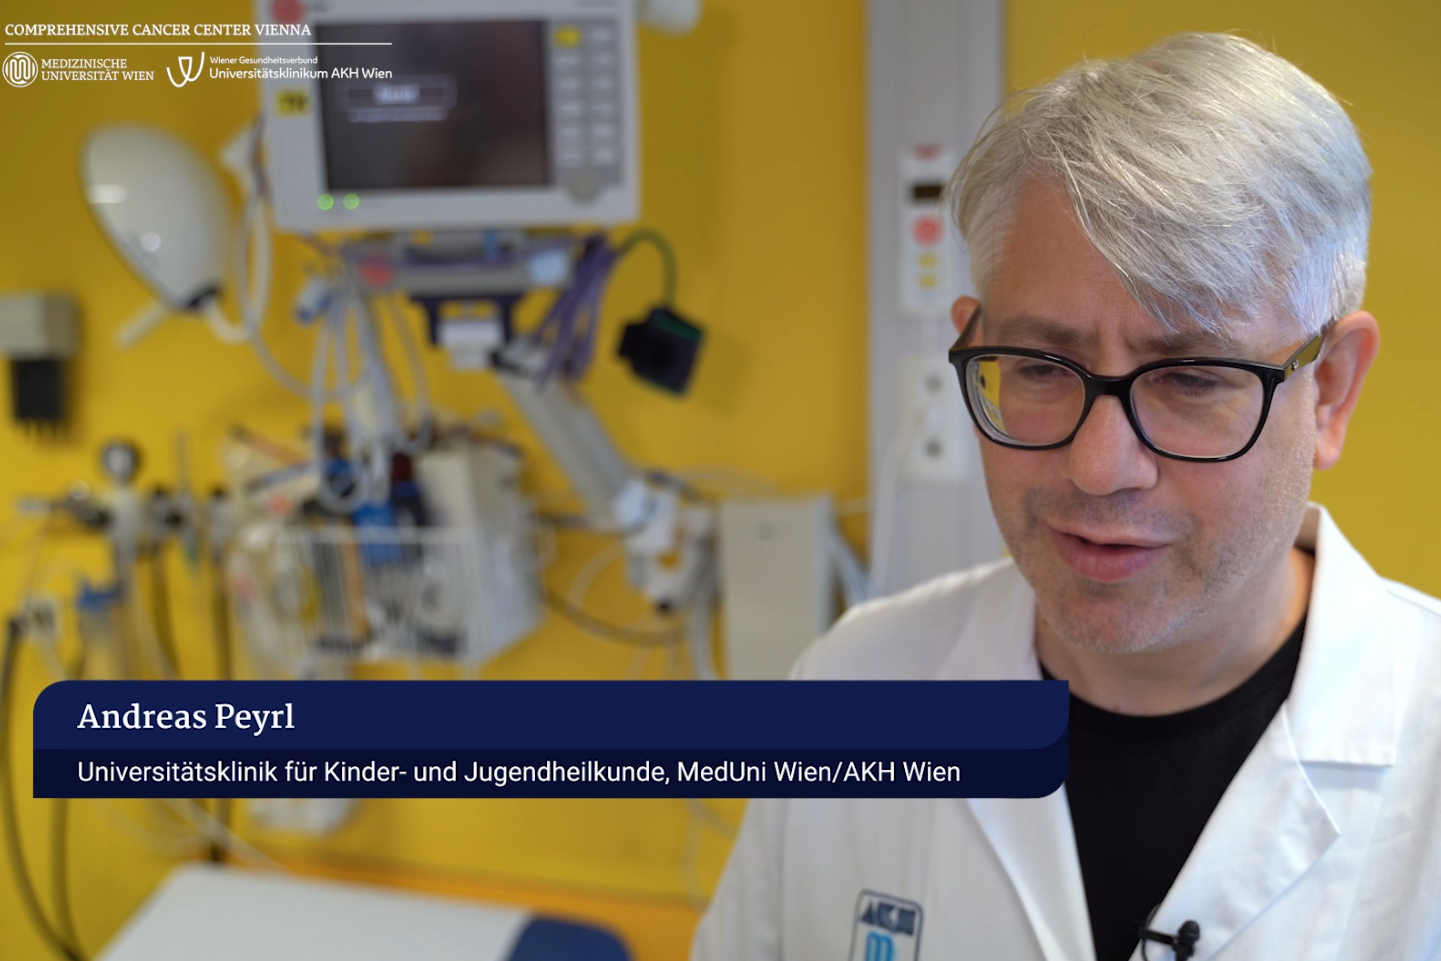 Andreas Peyrl, Universitätsklinik für Kinder- und Jugendheilkunde, zur MEMMAT-Studie ©Comprehensive Cancer Center Vienna